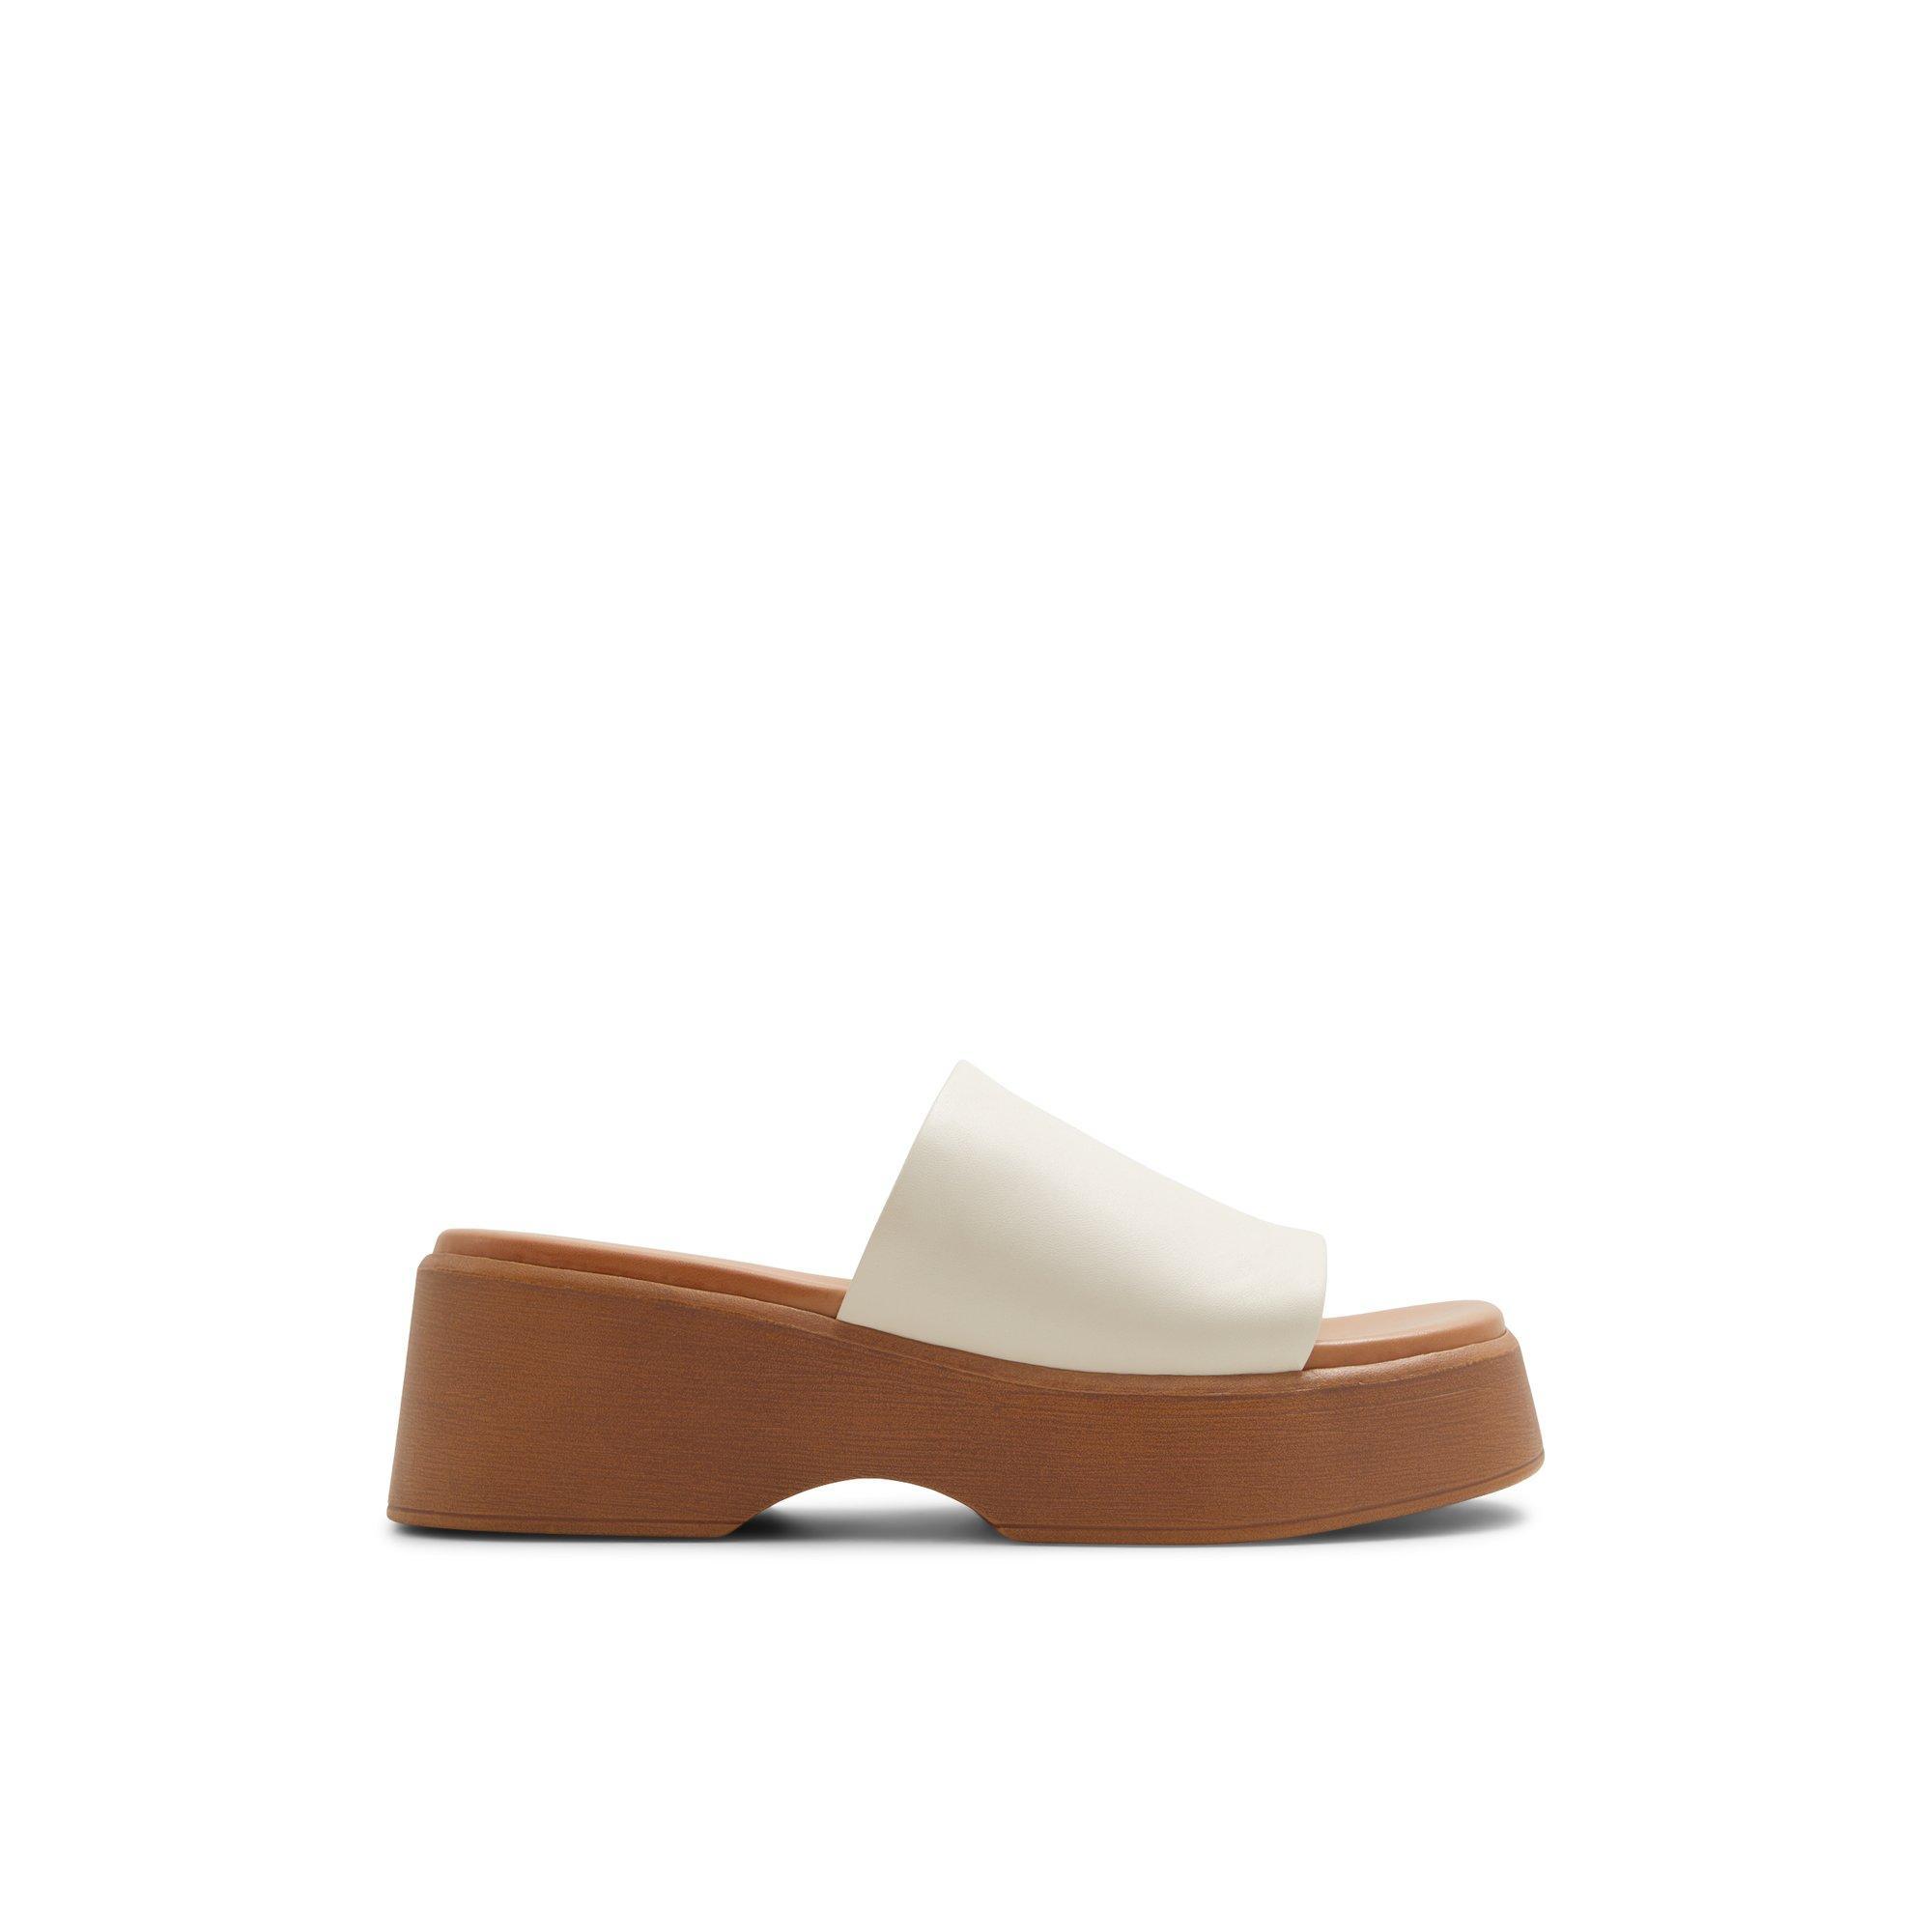 ALDO Yassu chunky mule sandals Product Image